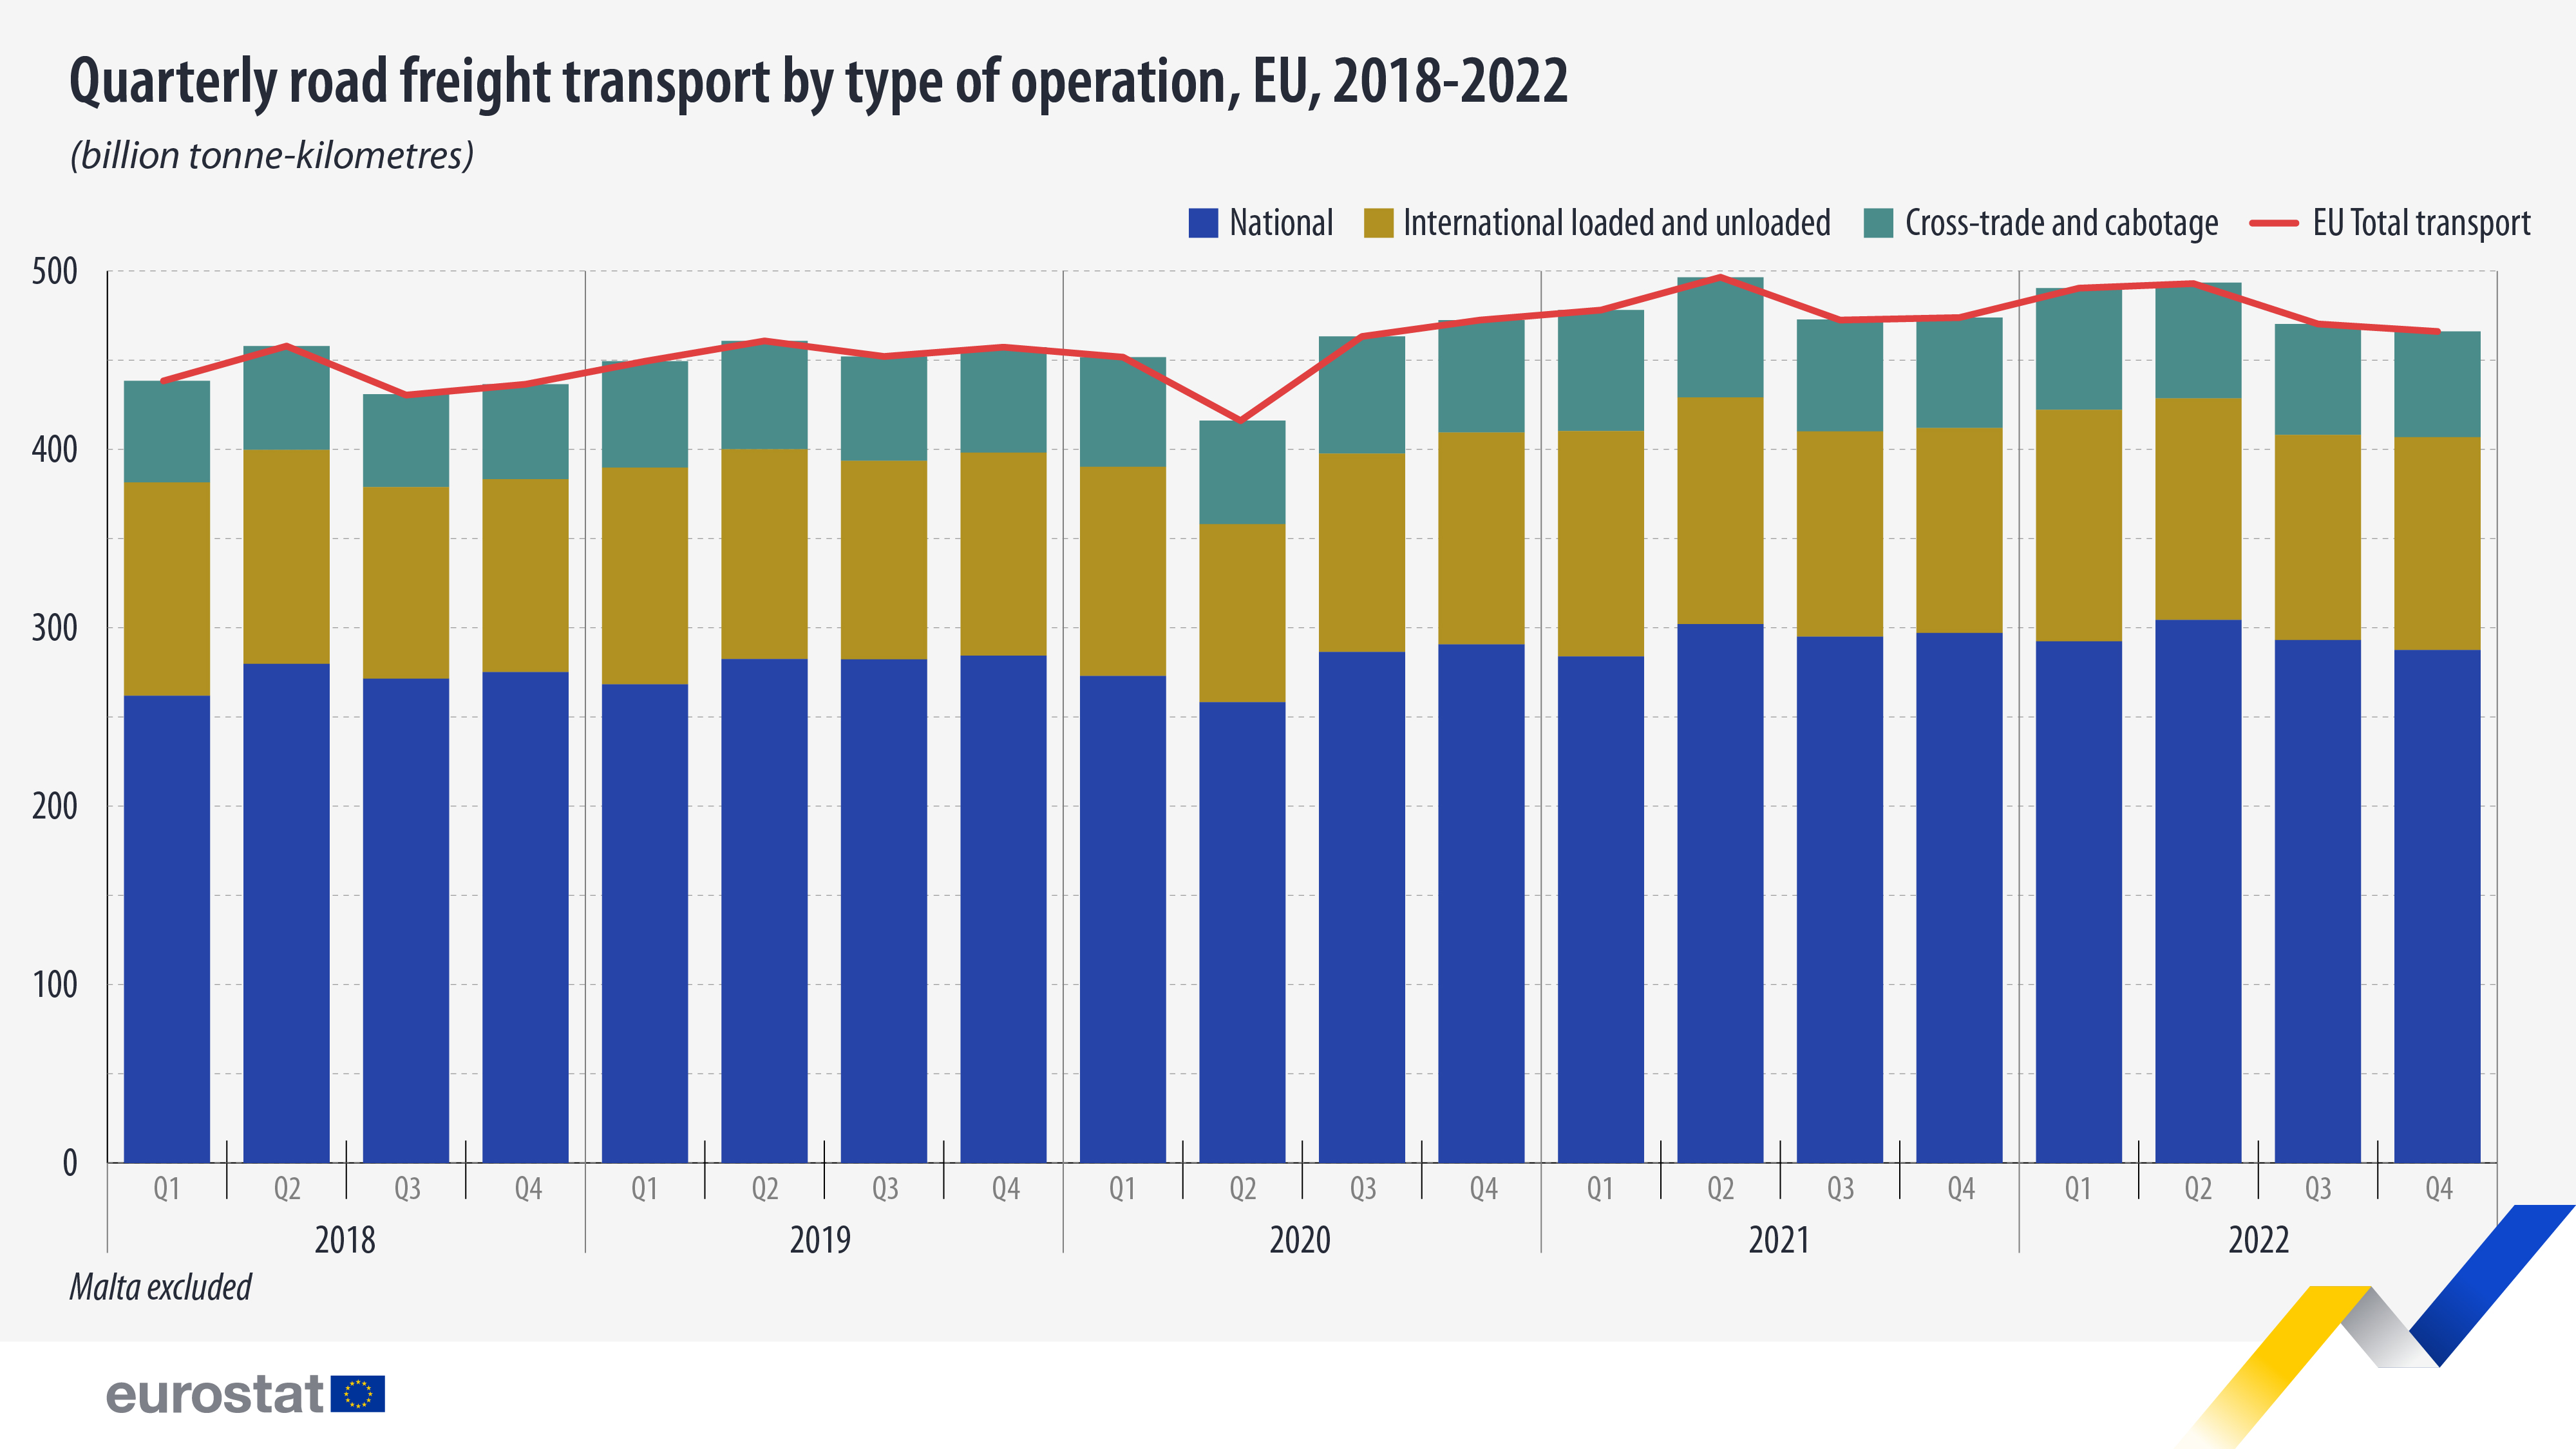 ραβδόγραμμα: τριμηνιαίες οδικές εμπορευματικές μεταφορές ανά τύπο λειτουργίας, 2018-2022, δισεκατομμύρια τονοχιλιόμετρα